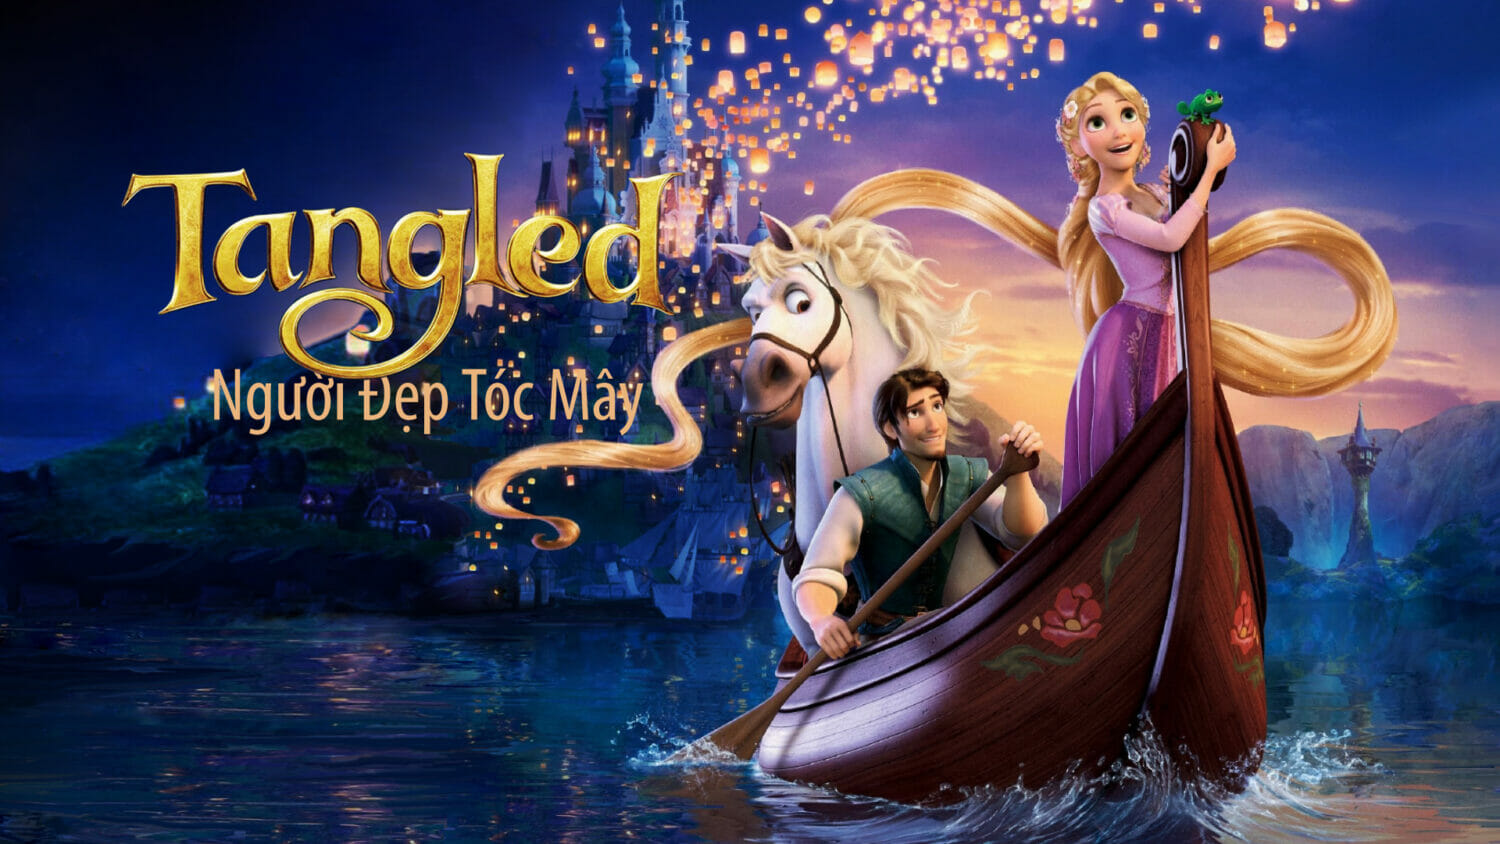 Tangled là bộ phim hoạt hình chiếu rạp - ca nhạc 3D nổi tiếng hãng Disney